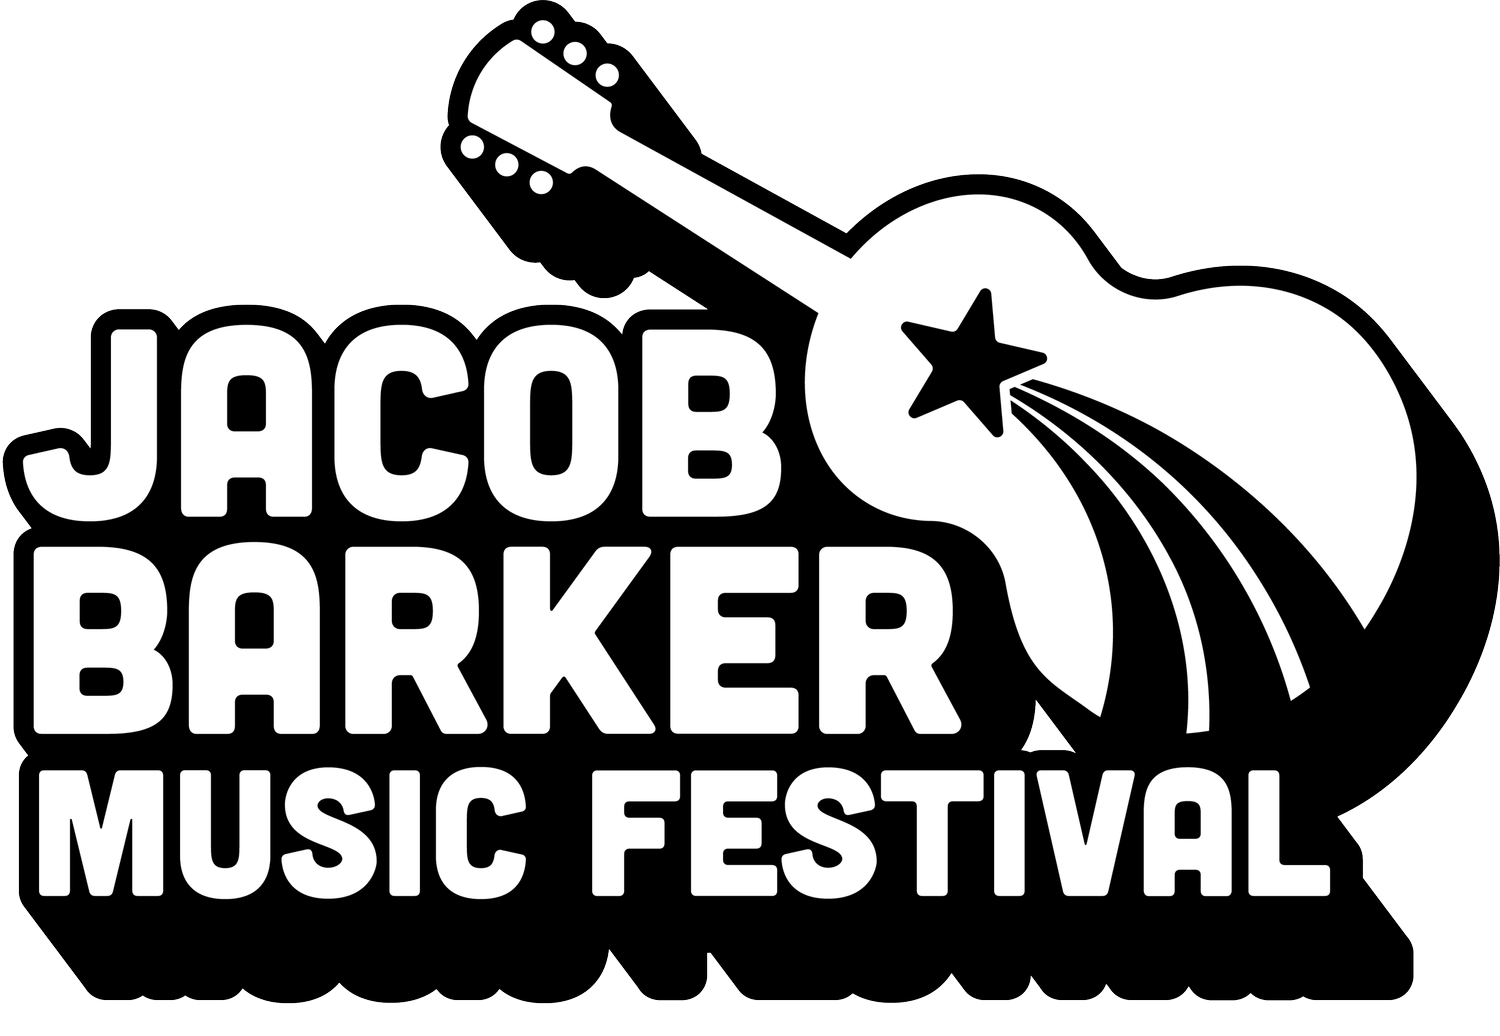 Jacob Barker Music Festival